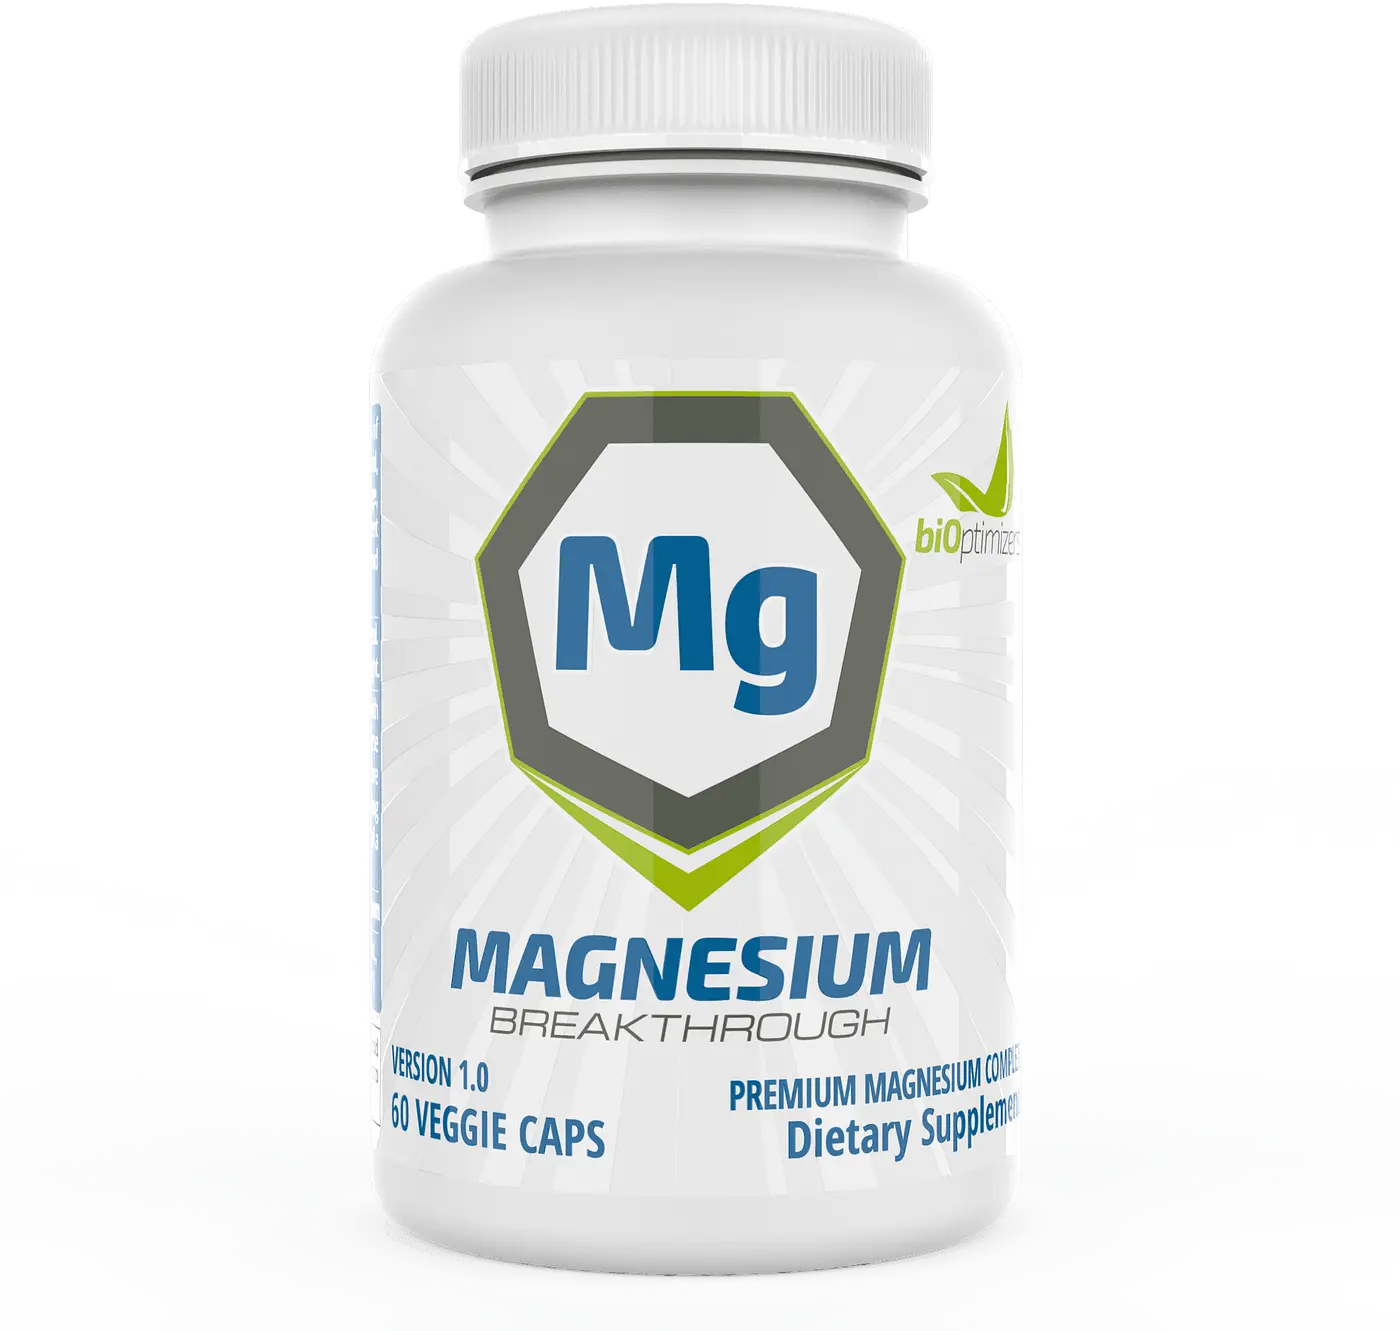 Magnesium Breakthrough Results